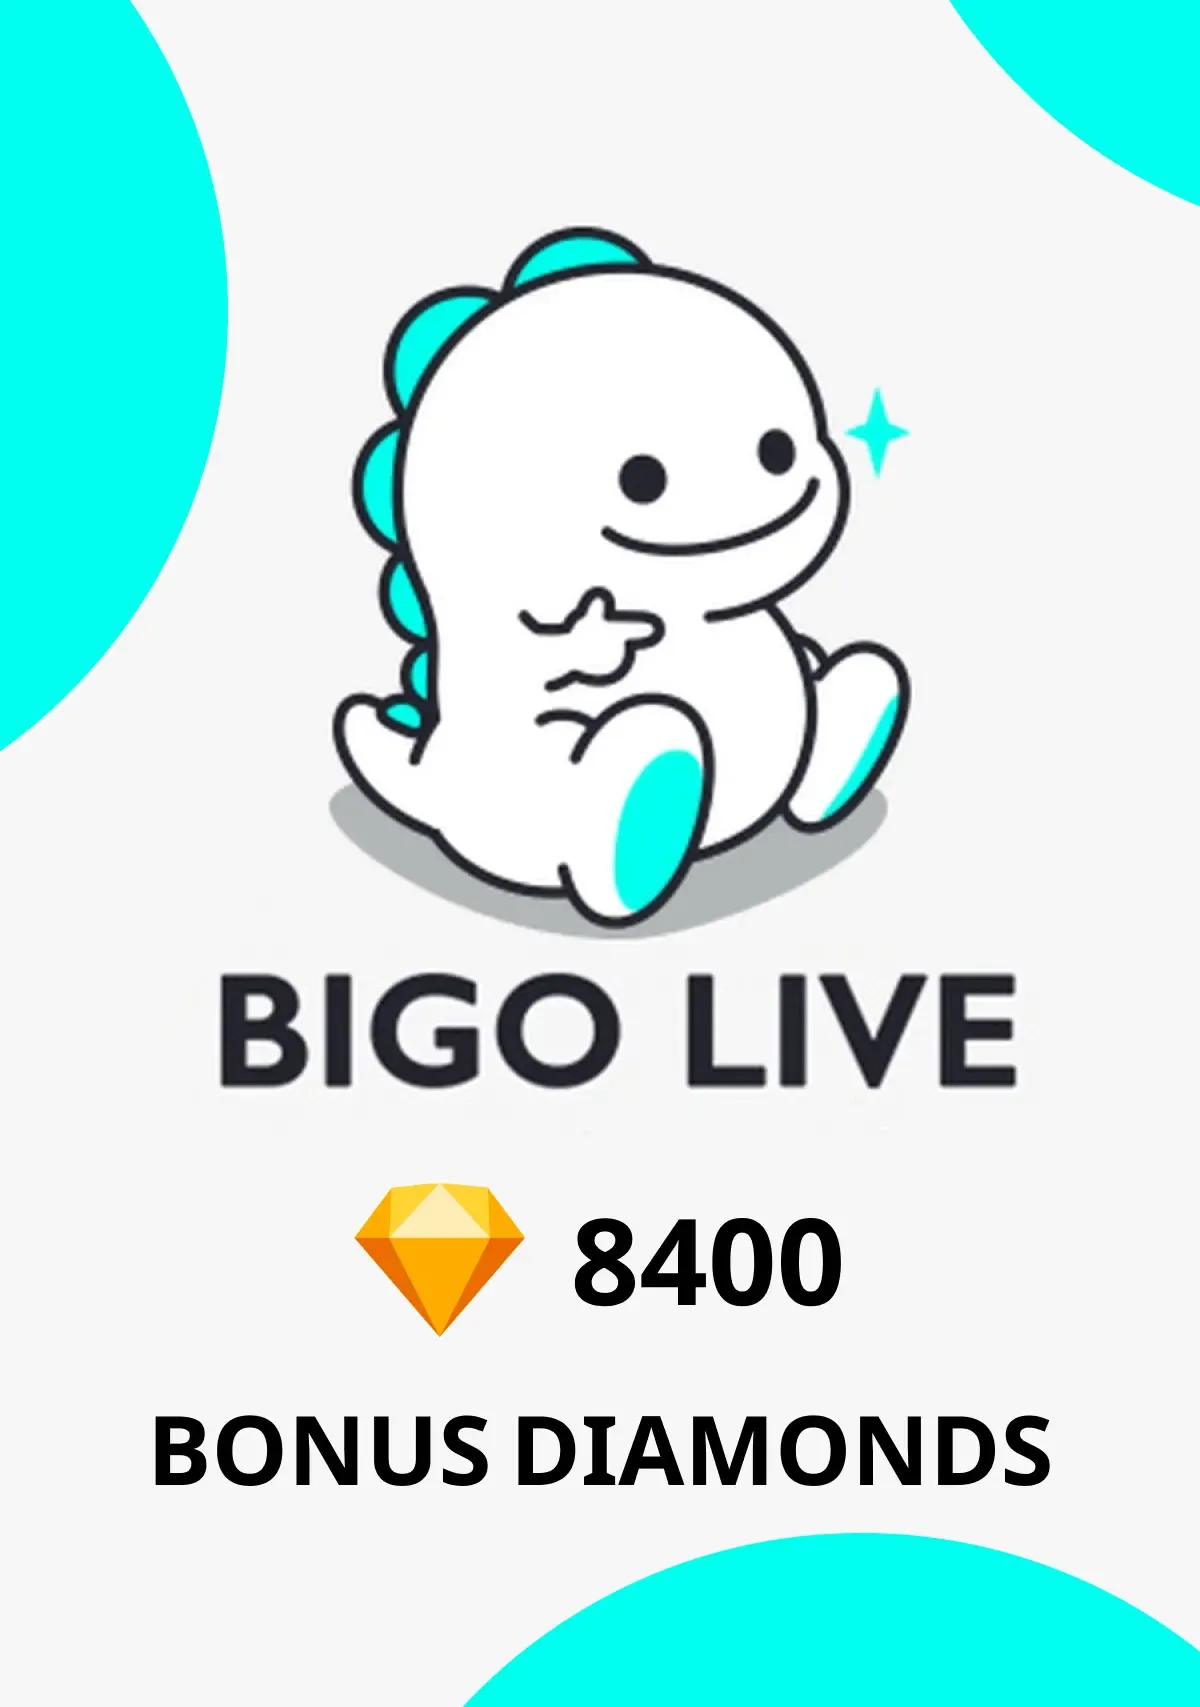 Comprar um cartão de oferta: Bigo Live Bonus Diamonds Digital Code